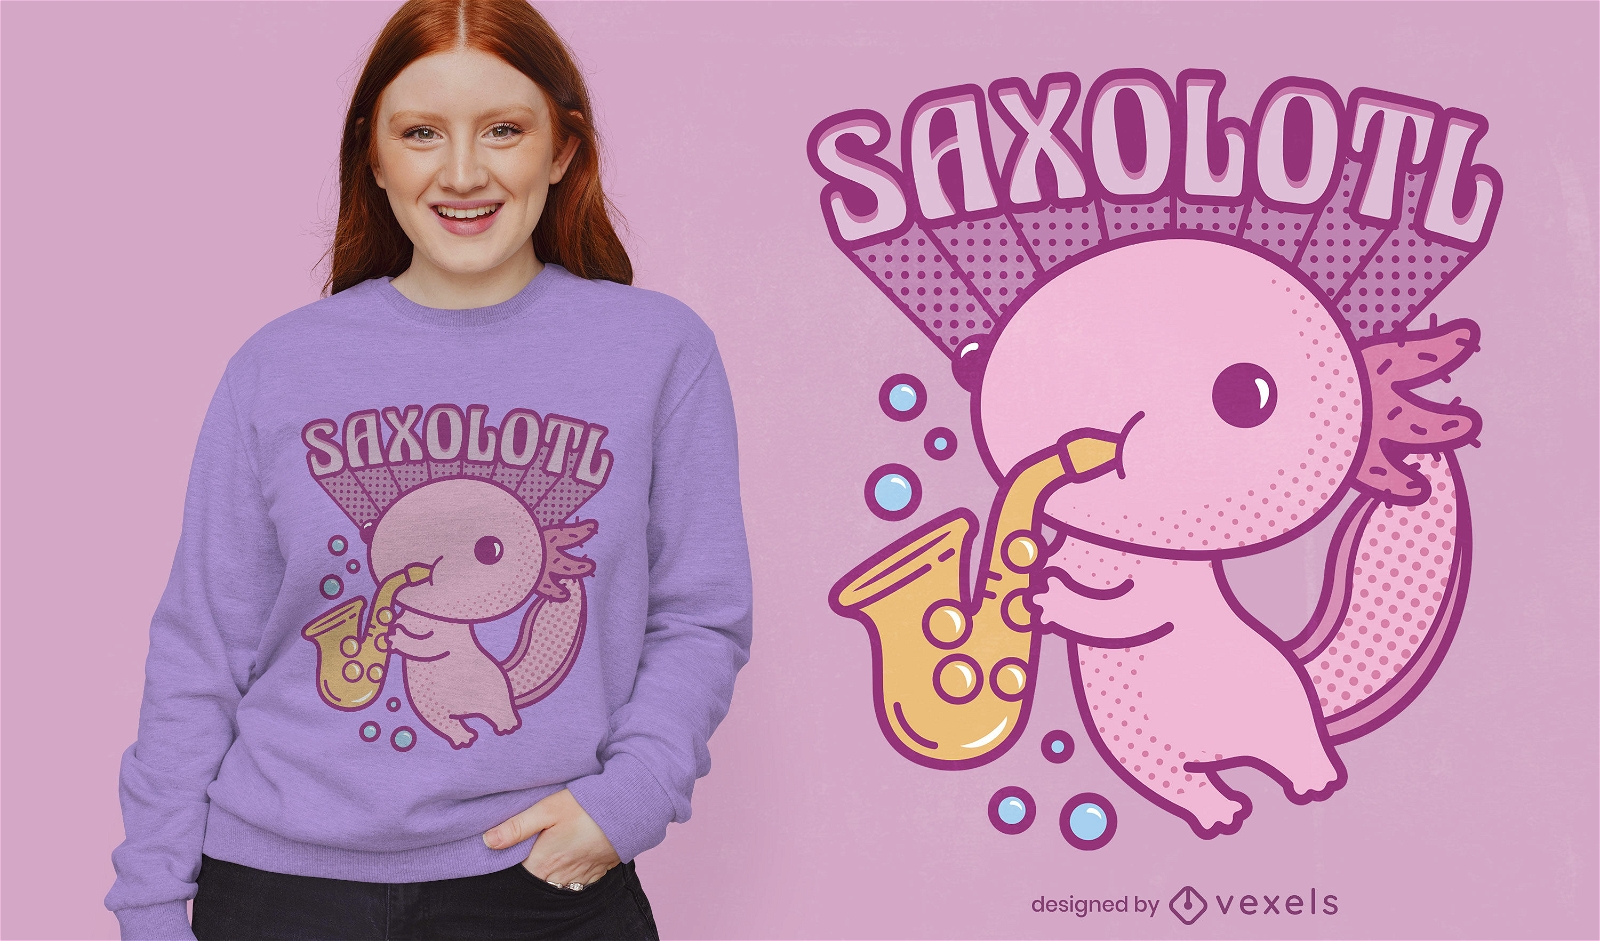 Axolotl-Tier, das Saxophon-T-Shirt Design spielt